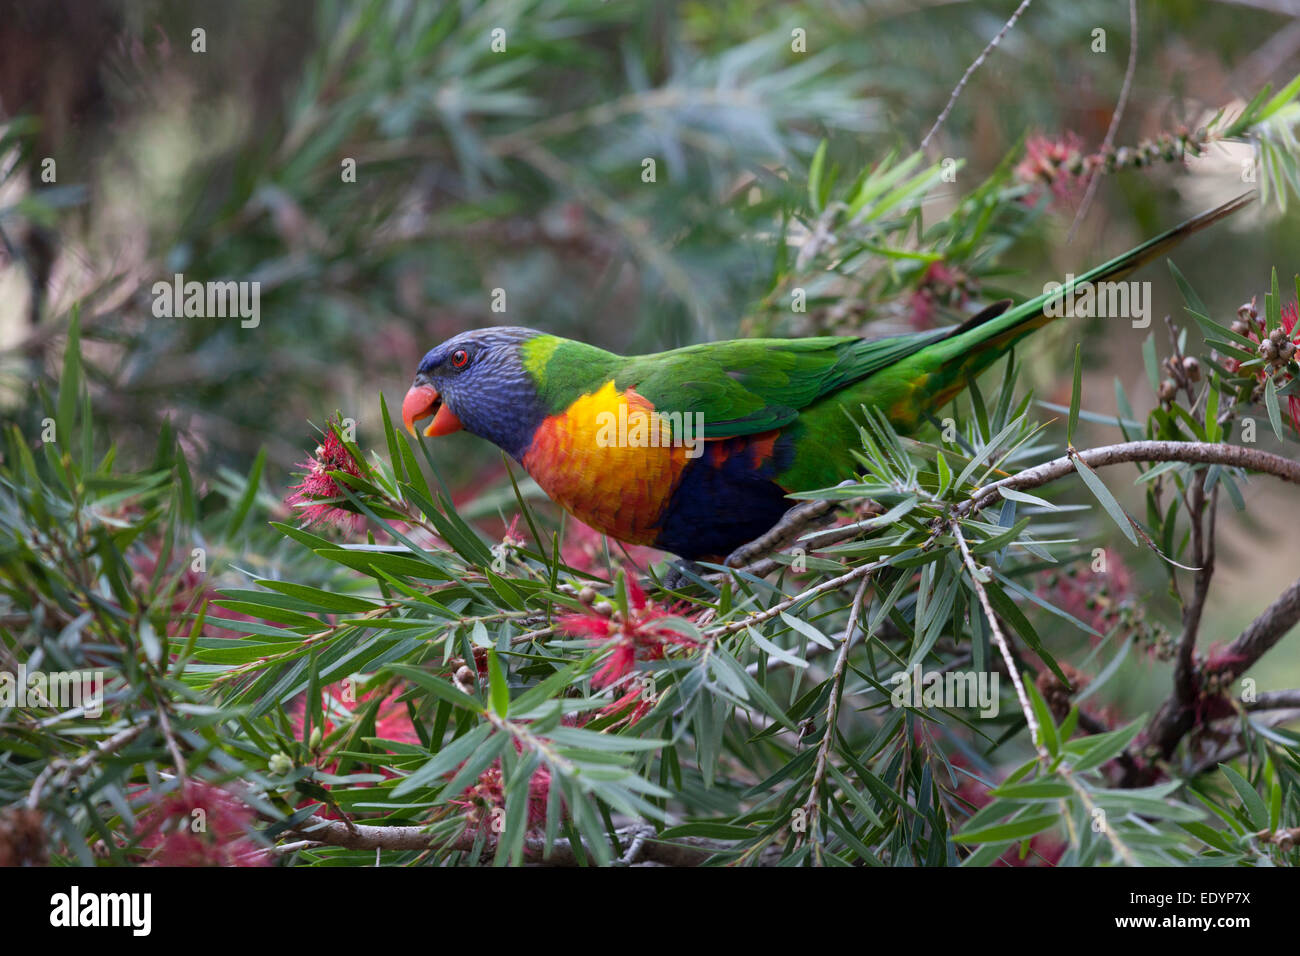 Regenbogen Lorikeet Vogel in eine Flasche Bürste Strauch, Australien Stockfoto